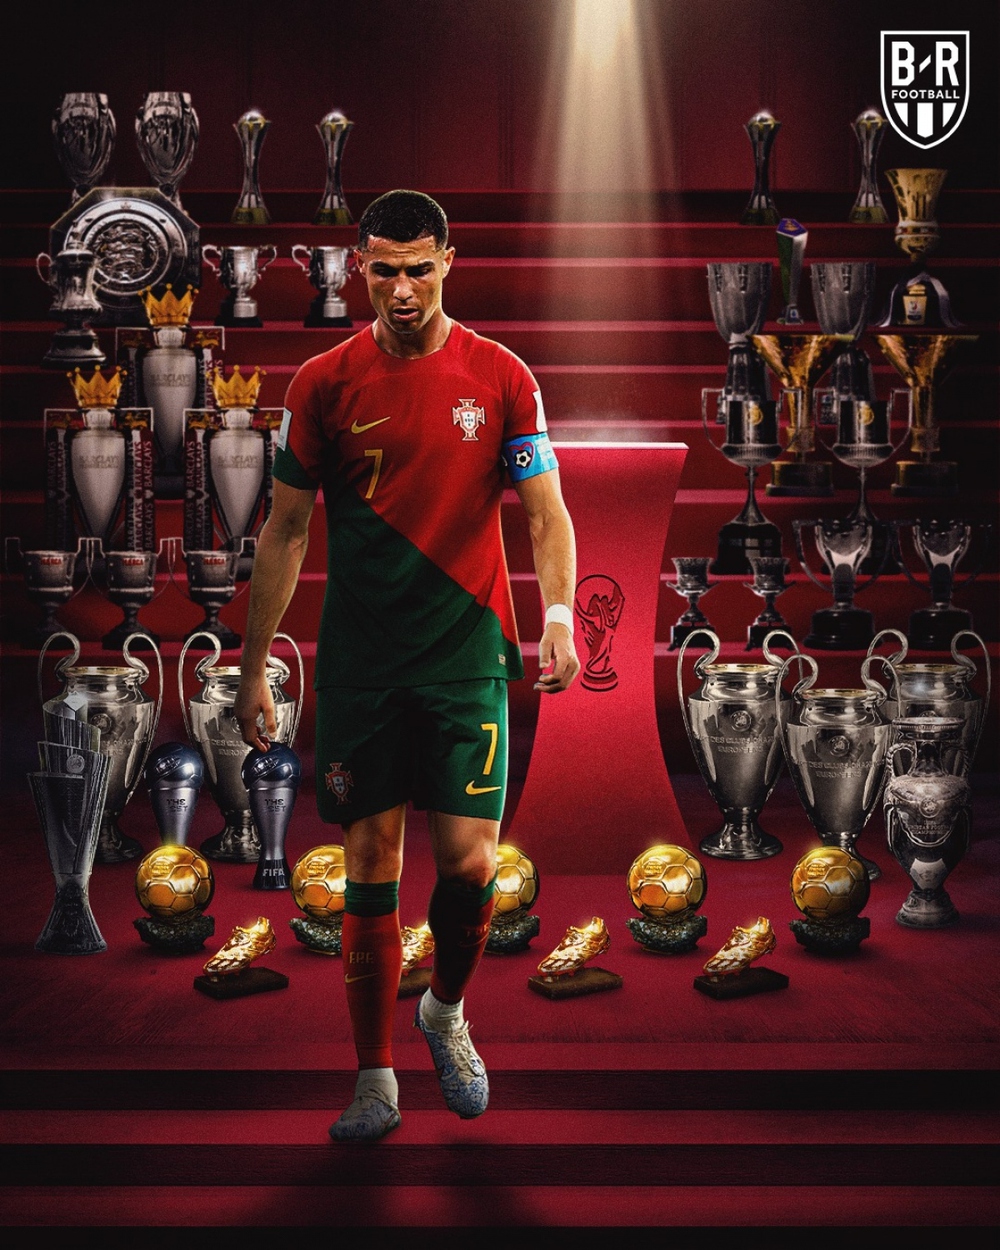 Bồ Đào Nha đang là một trong những đội bóng sáng cửa tại World Cup